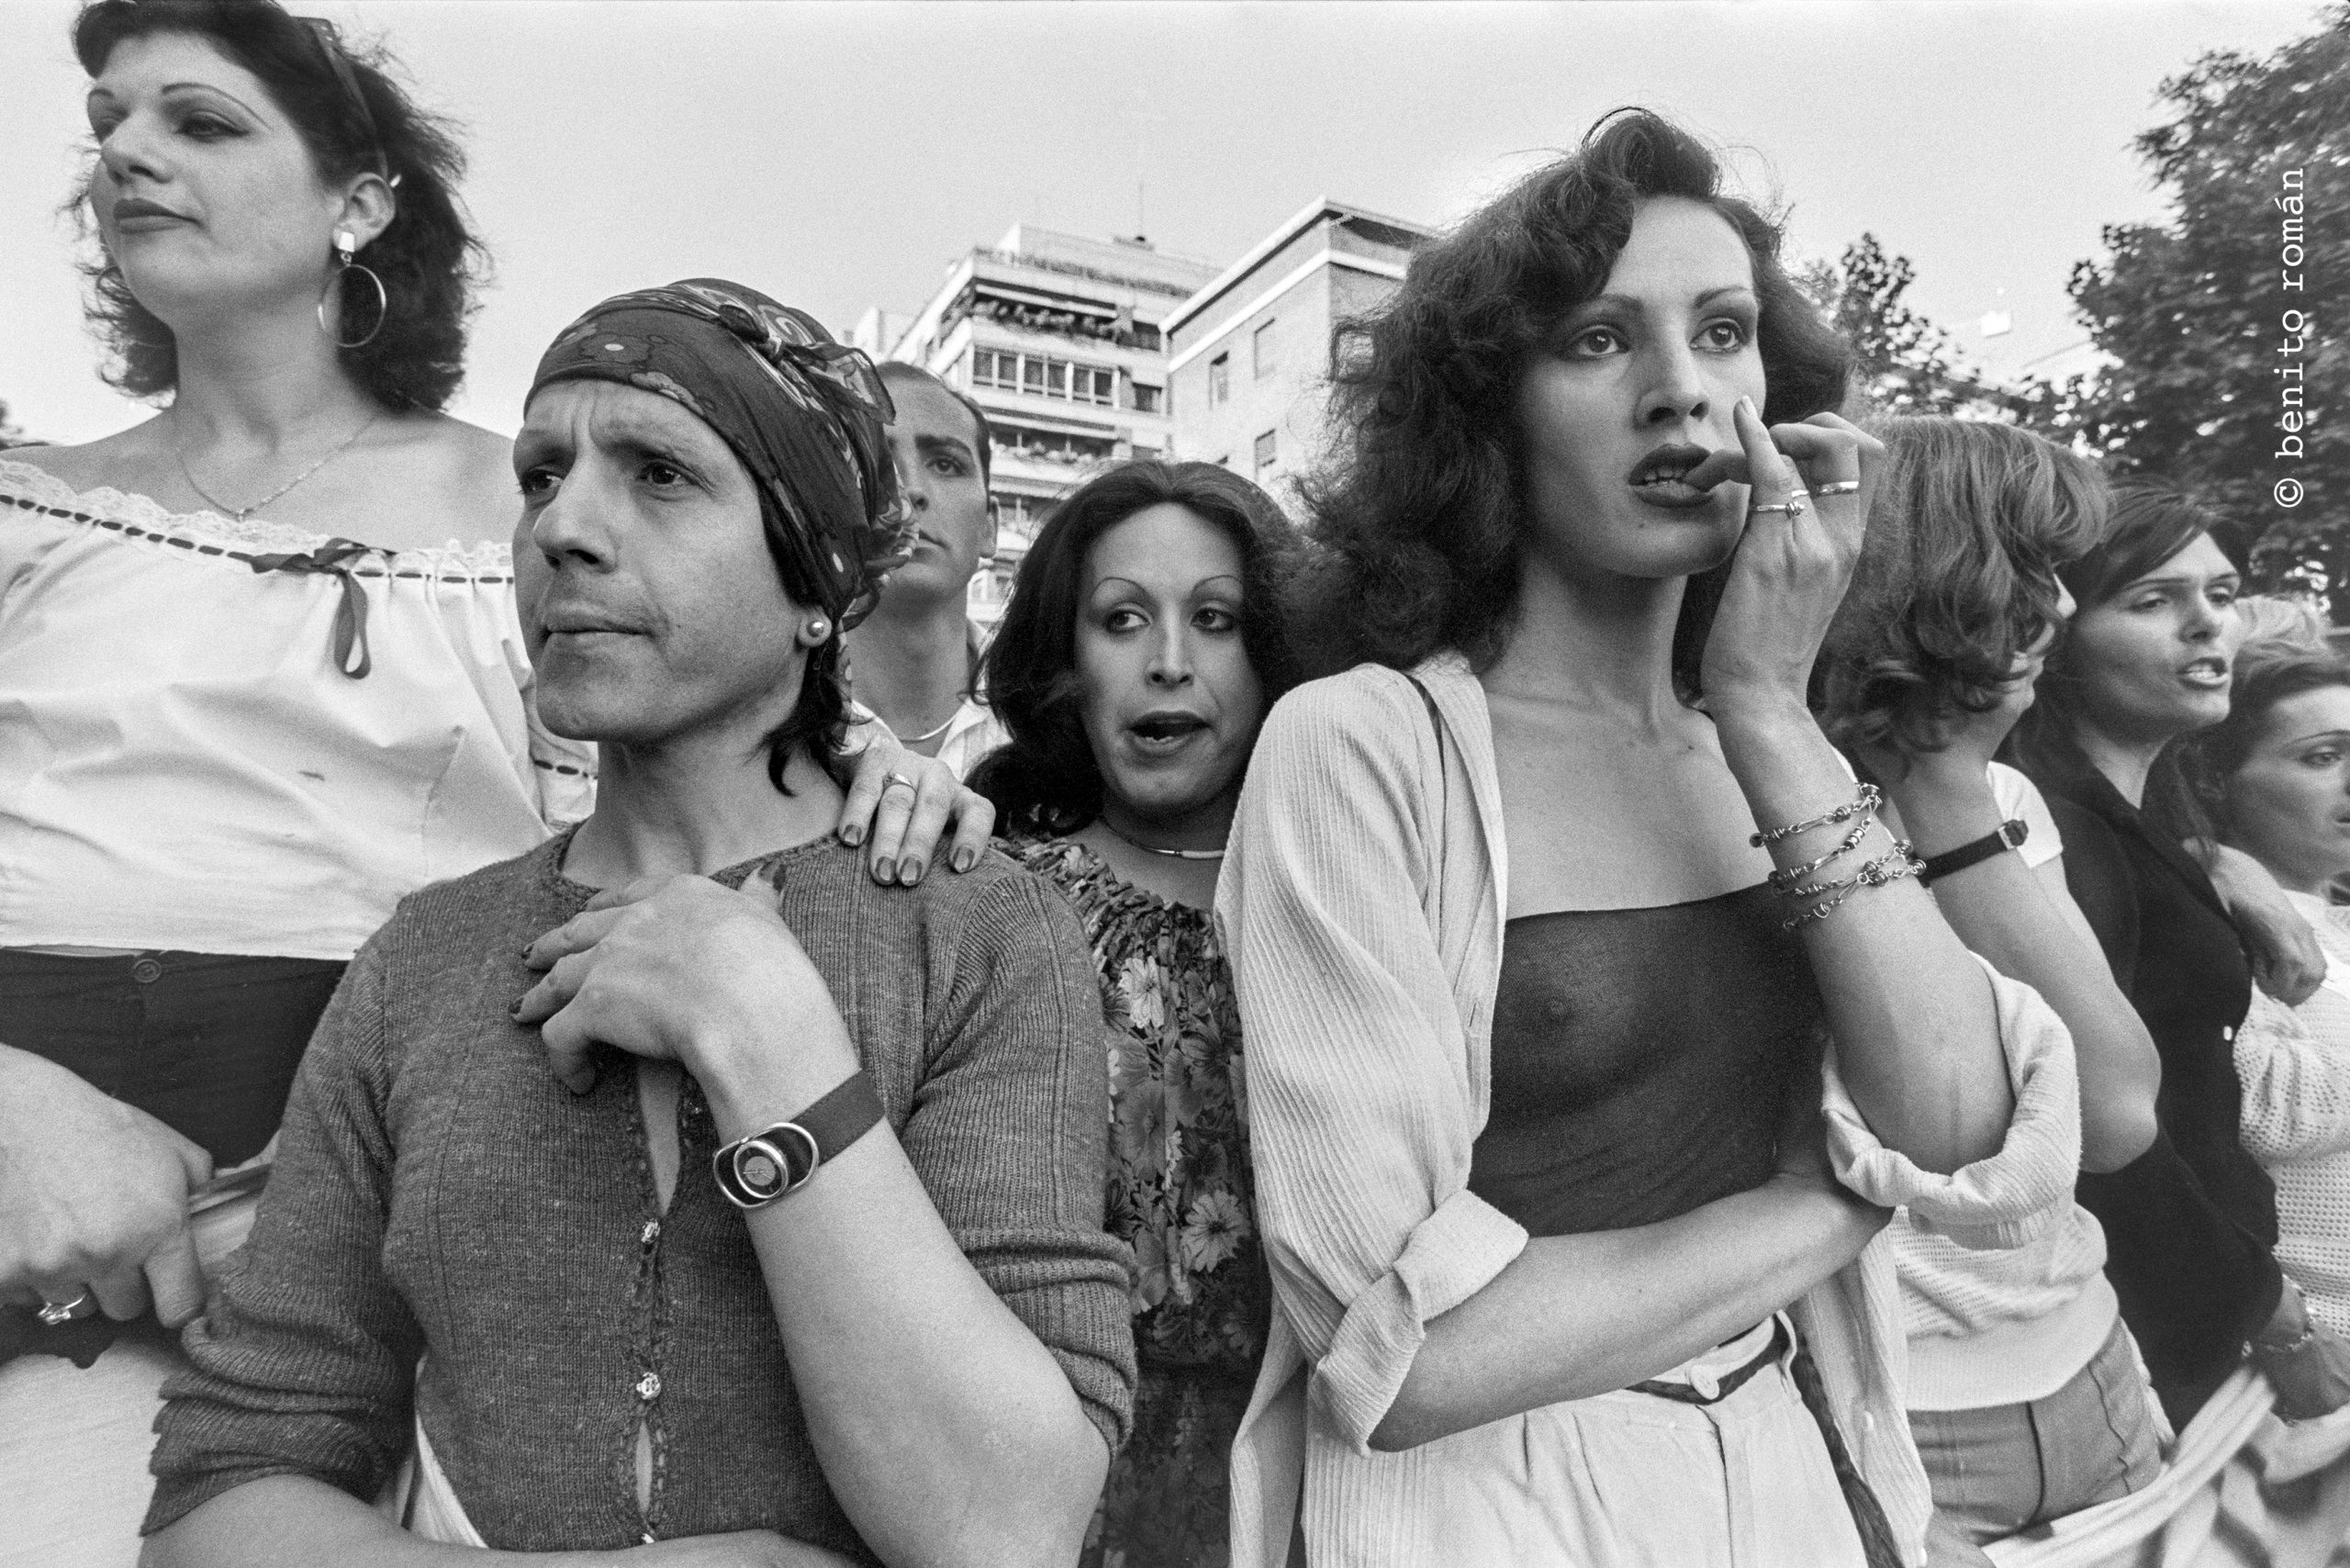 Primera marcha organizada del colectivo LGTB (Benito Román, Madrid, 1978)